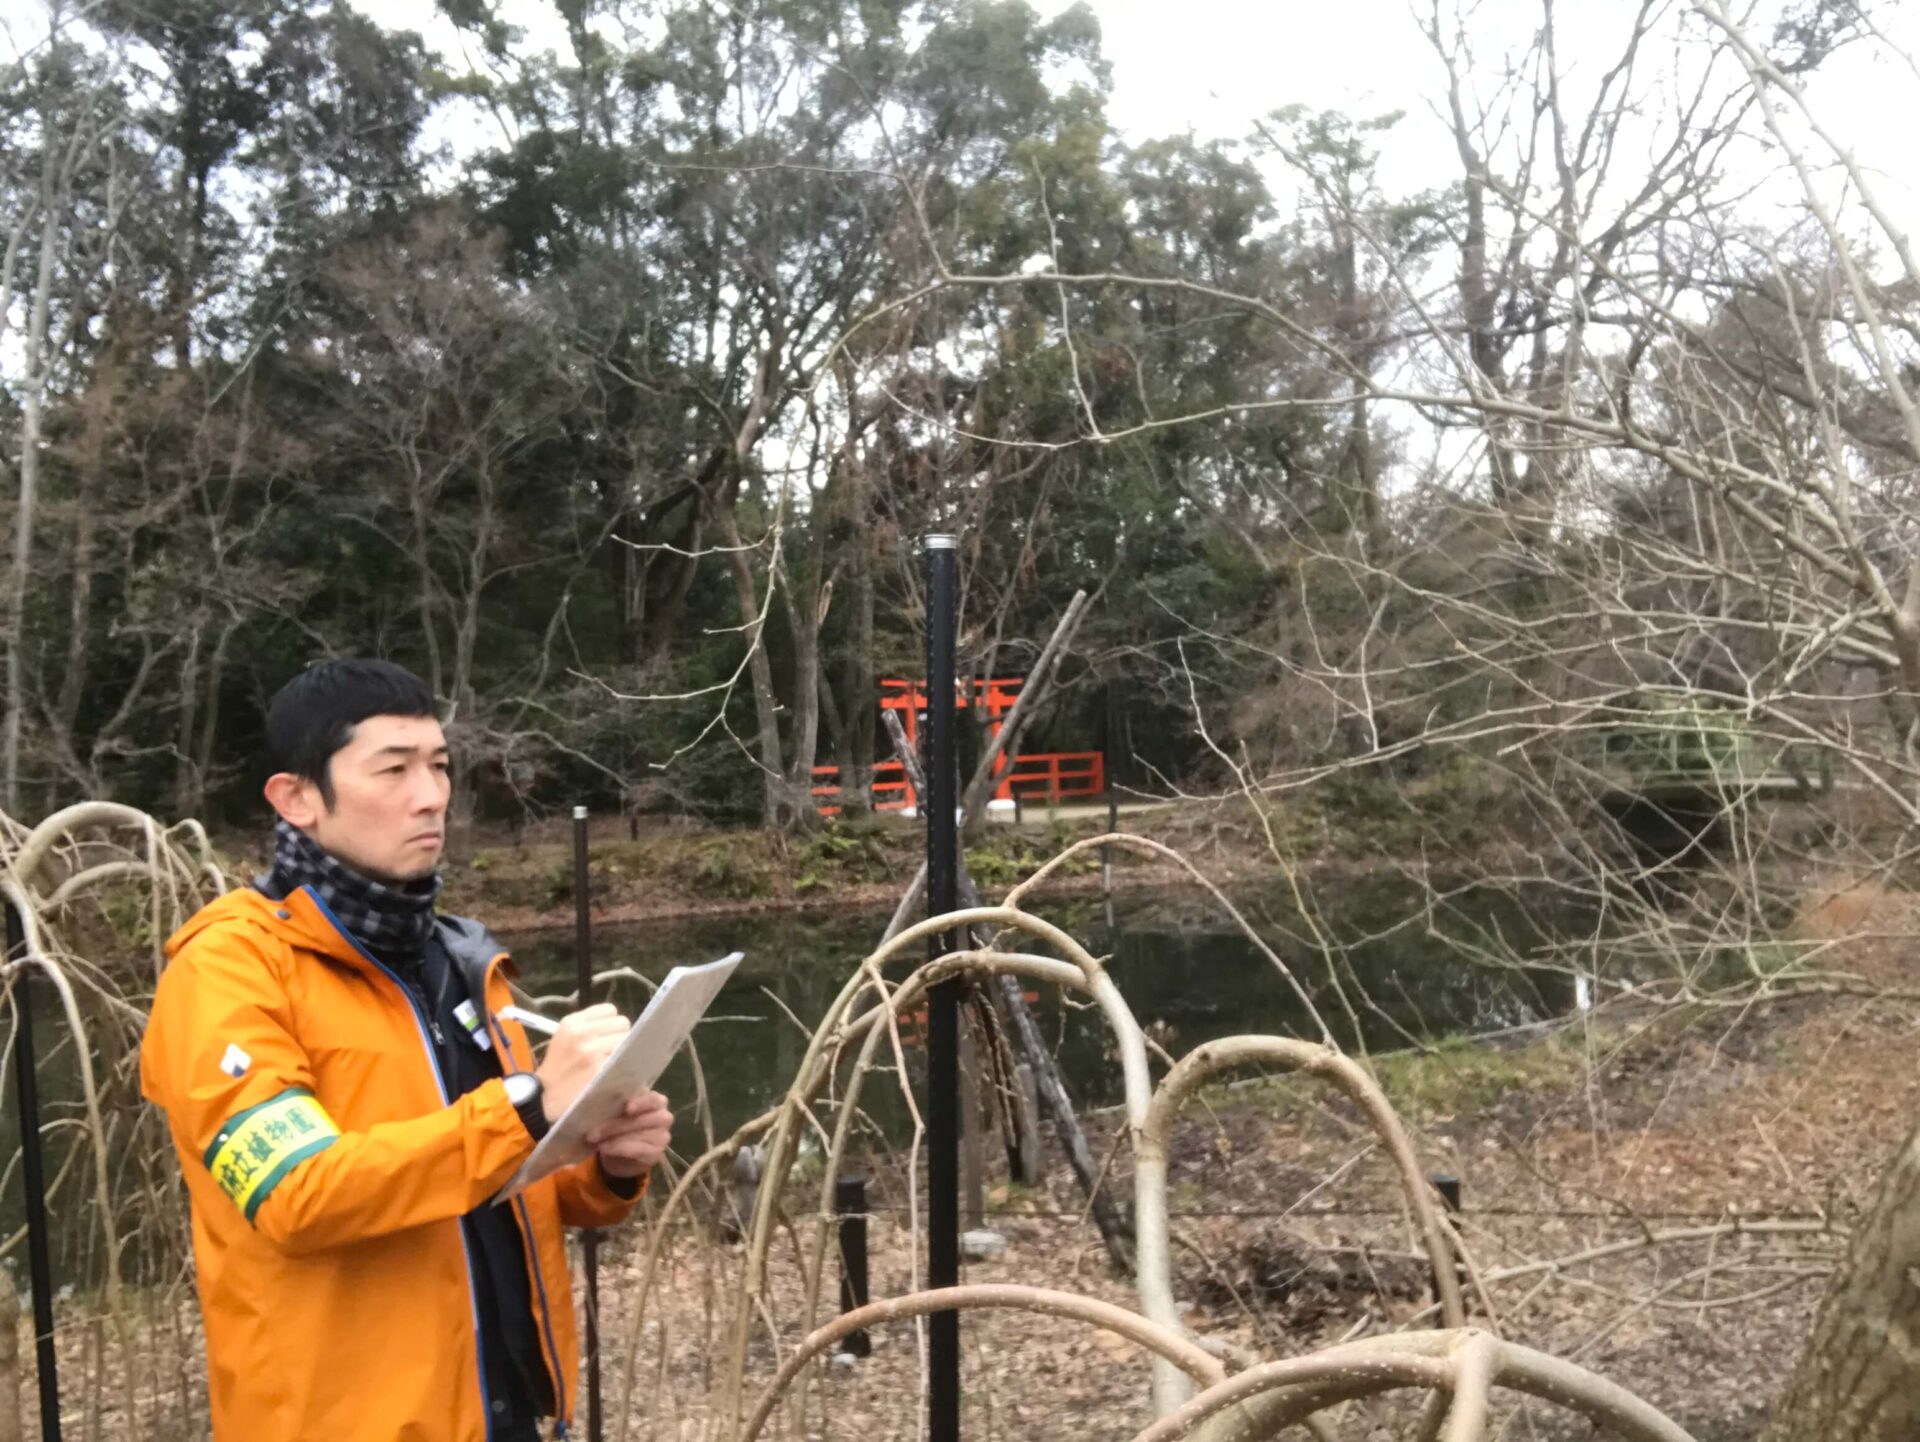 竹浪さんが、植物園で調査をされた際のお写真です。オレンジ色のジャンパーを着た竹浪さんが、植物園の木々の前で、手に持ったノートに何か書き込みをしています